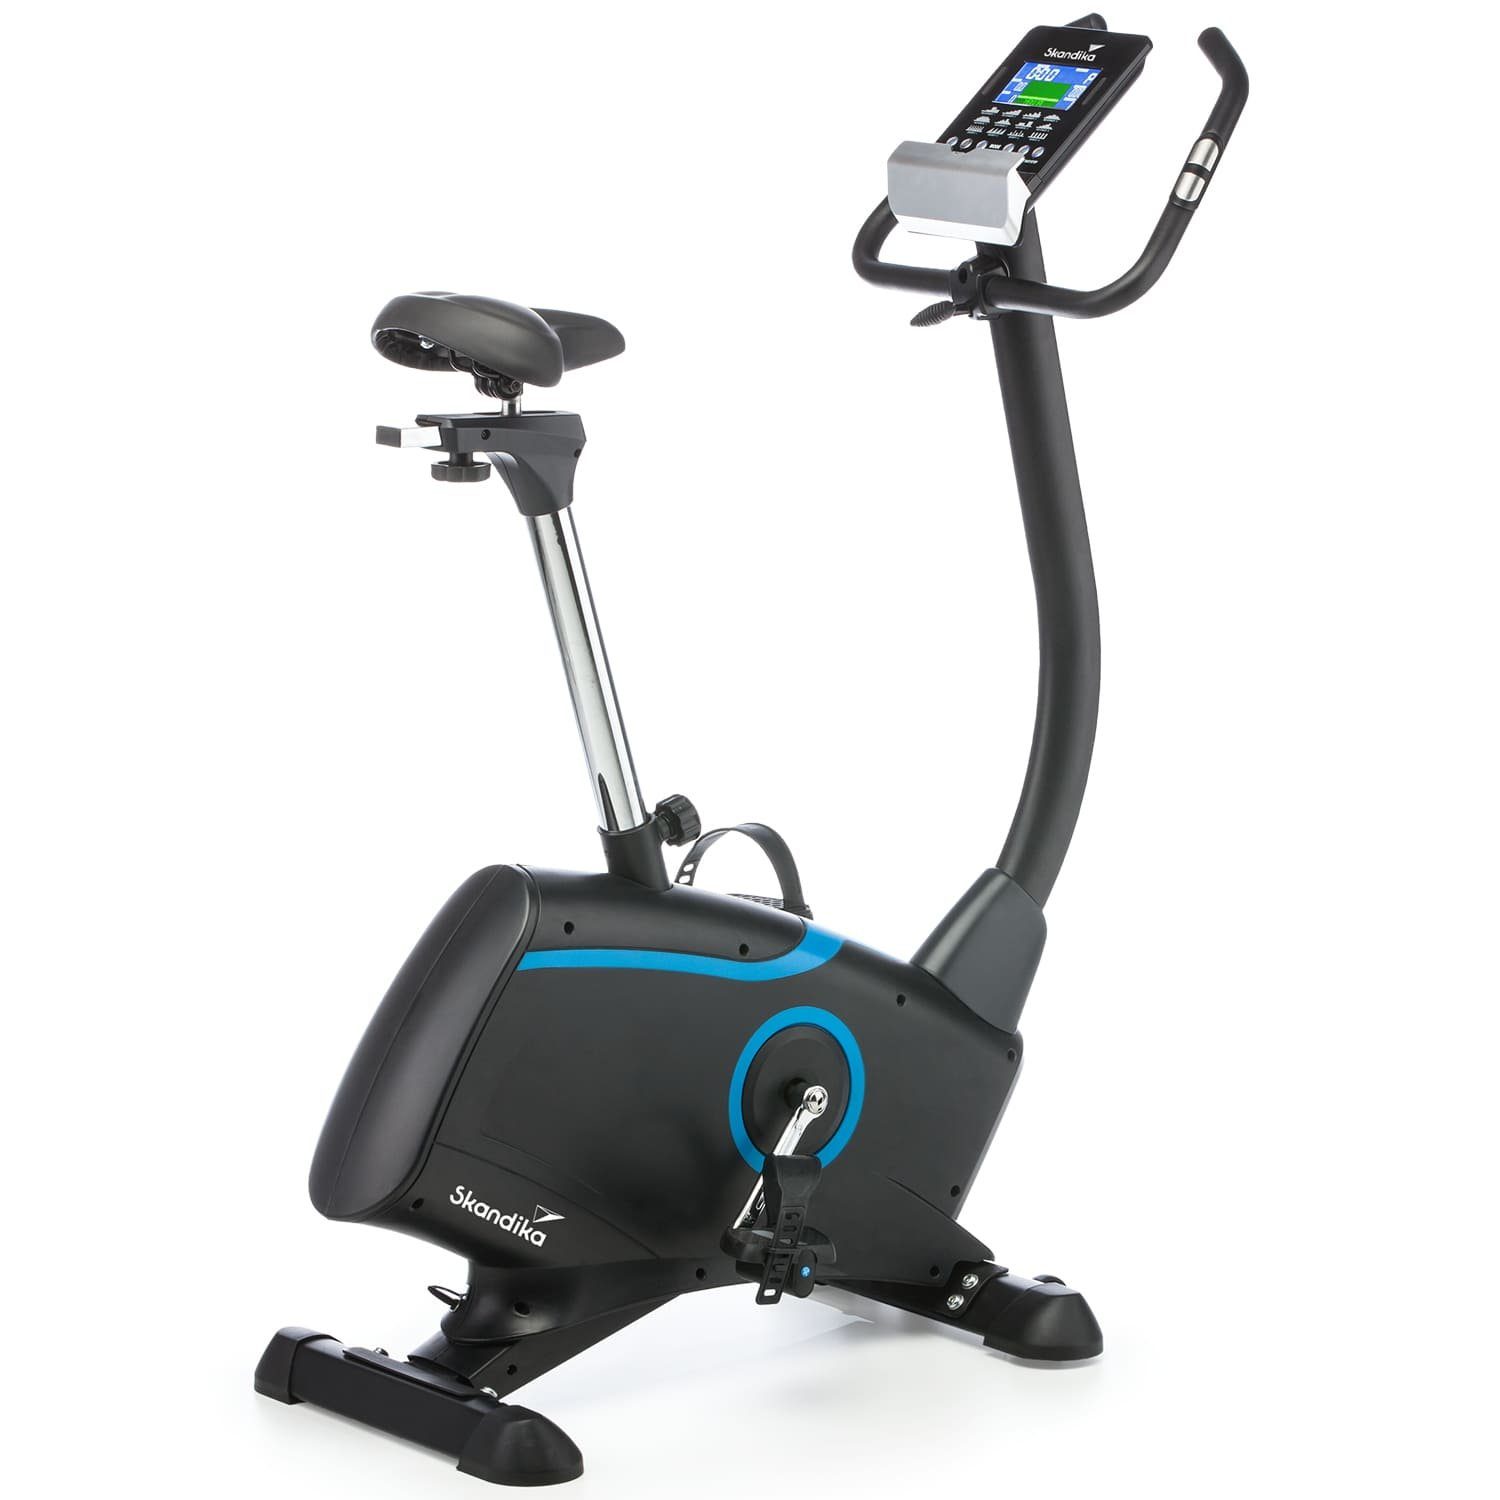 Skandika Ergometer Cardio Bike Atlantis Heimtrainer mit App Steuerung, Bluetooth, 32 Stufen, geräuscharm, Transportrollen, bis 150kg